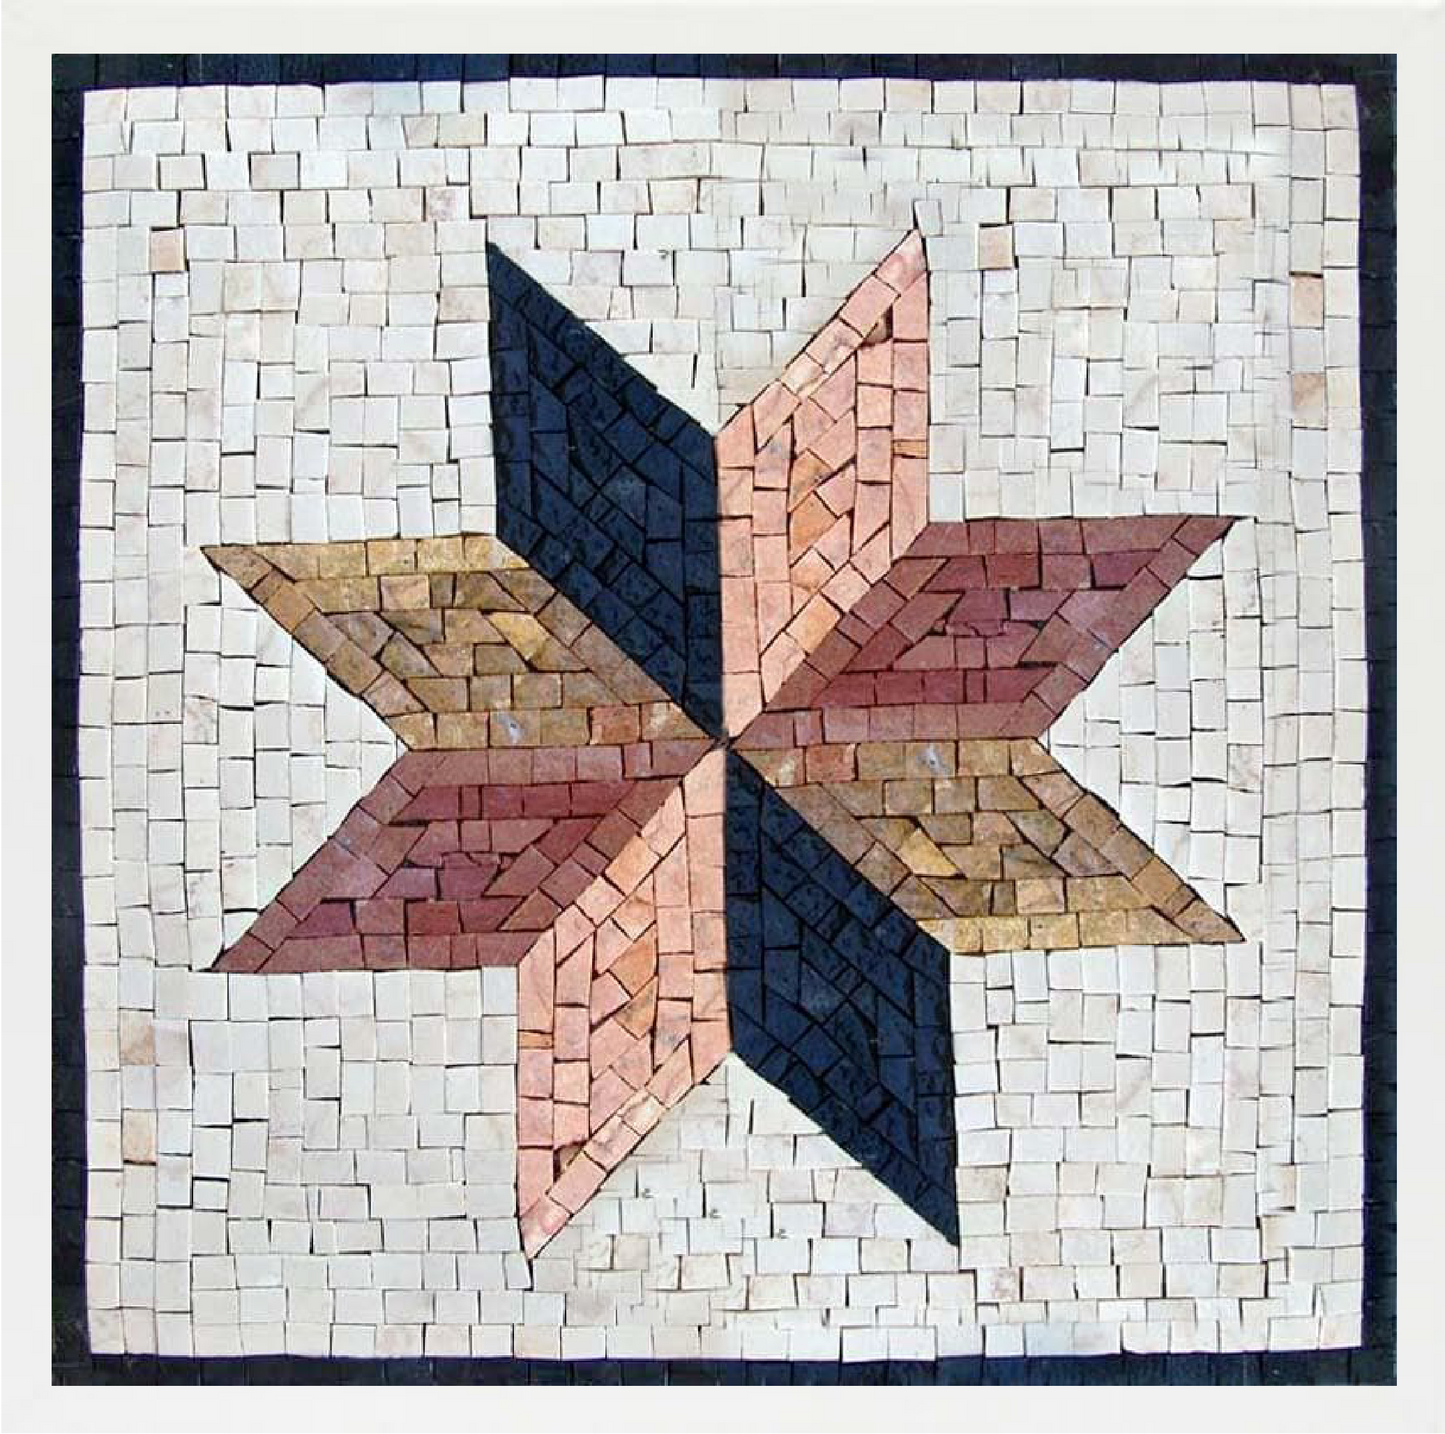 8 point star motif mosaic art